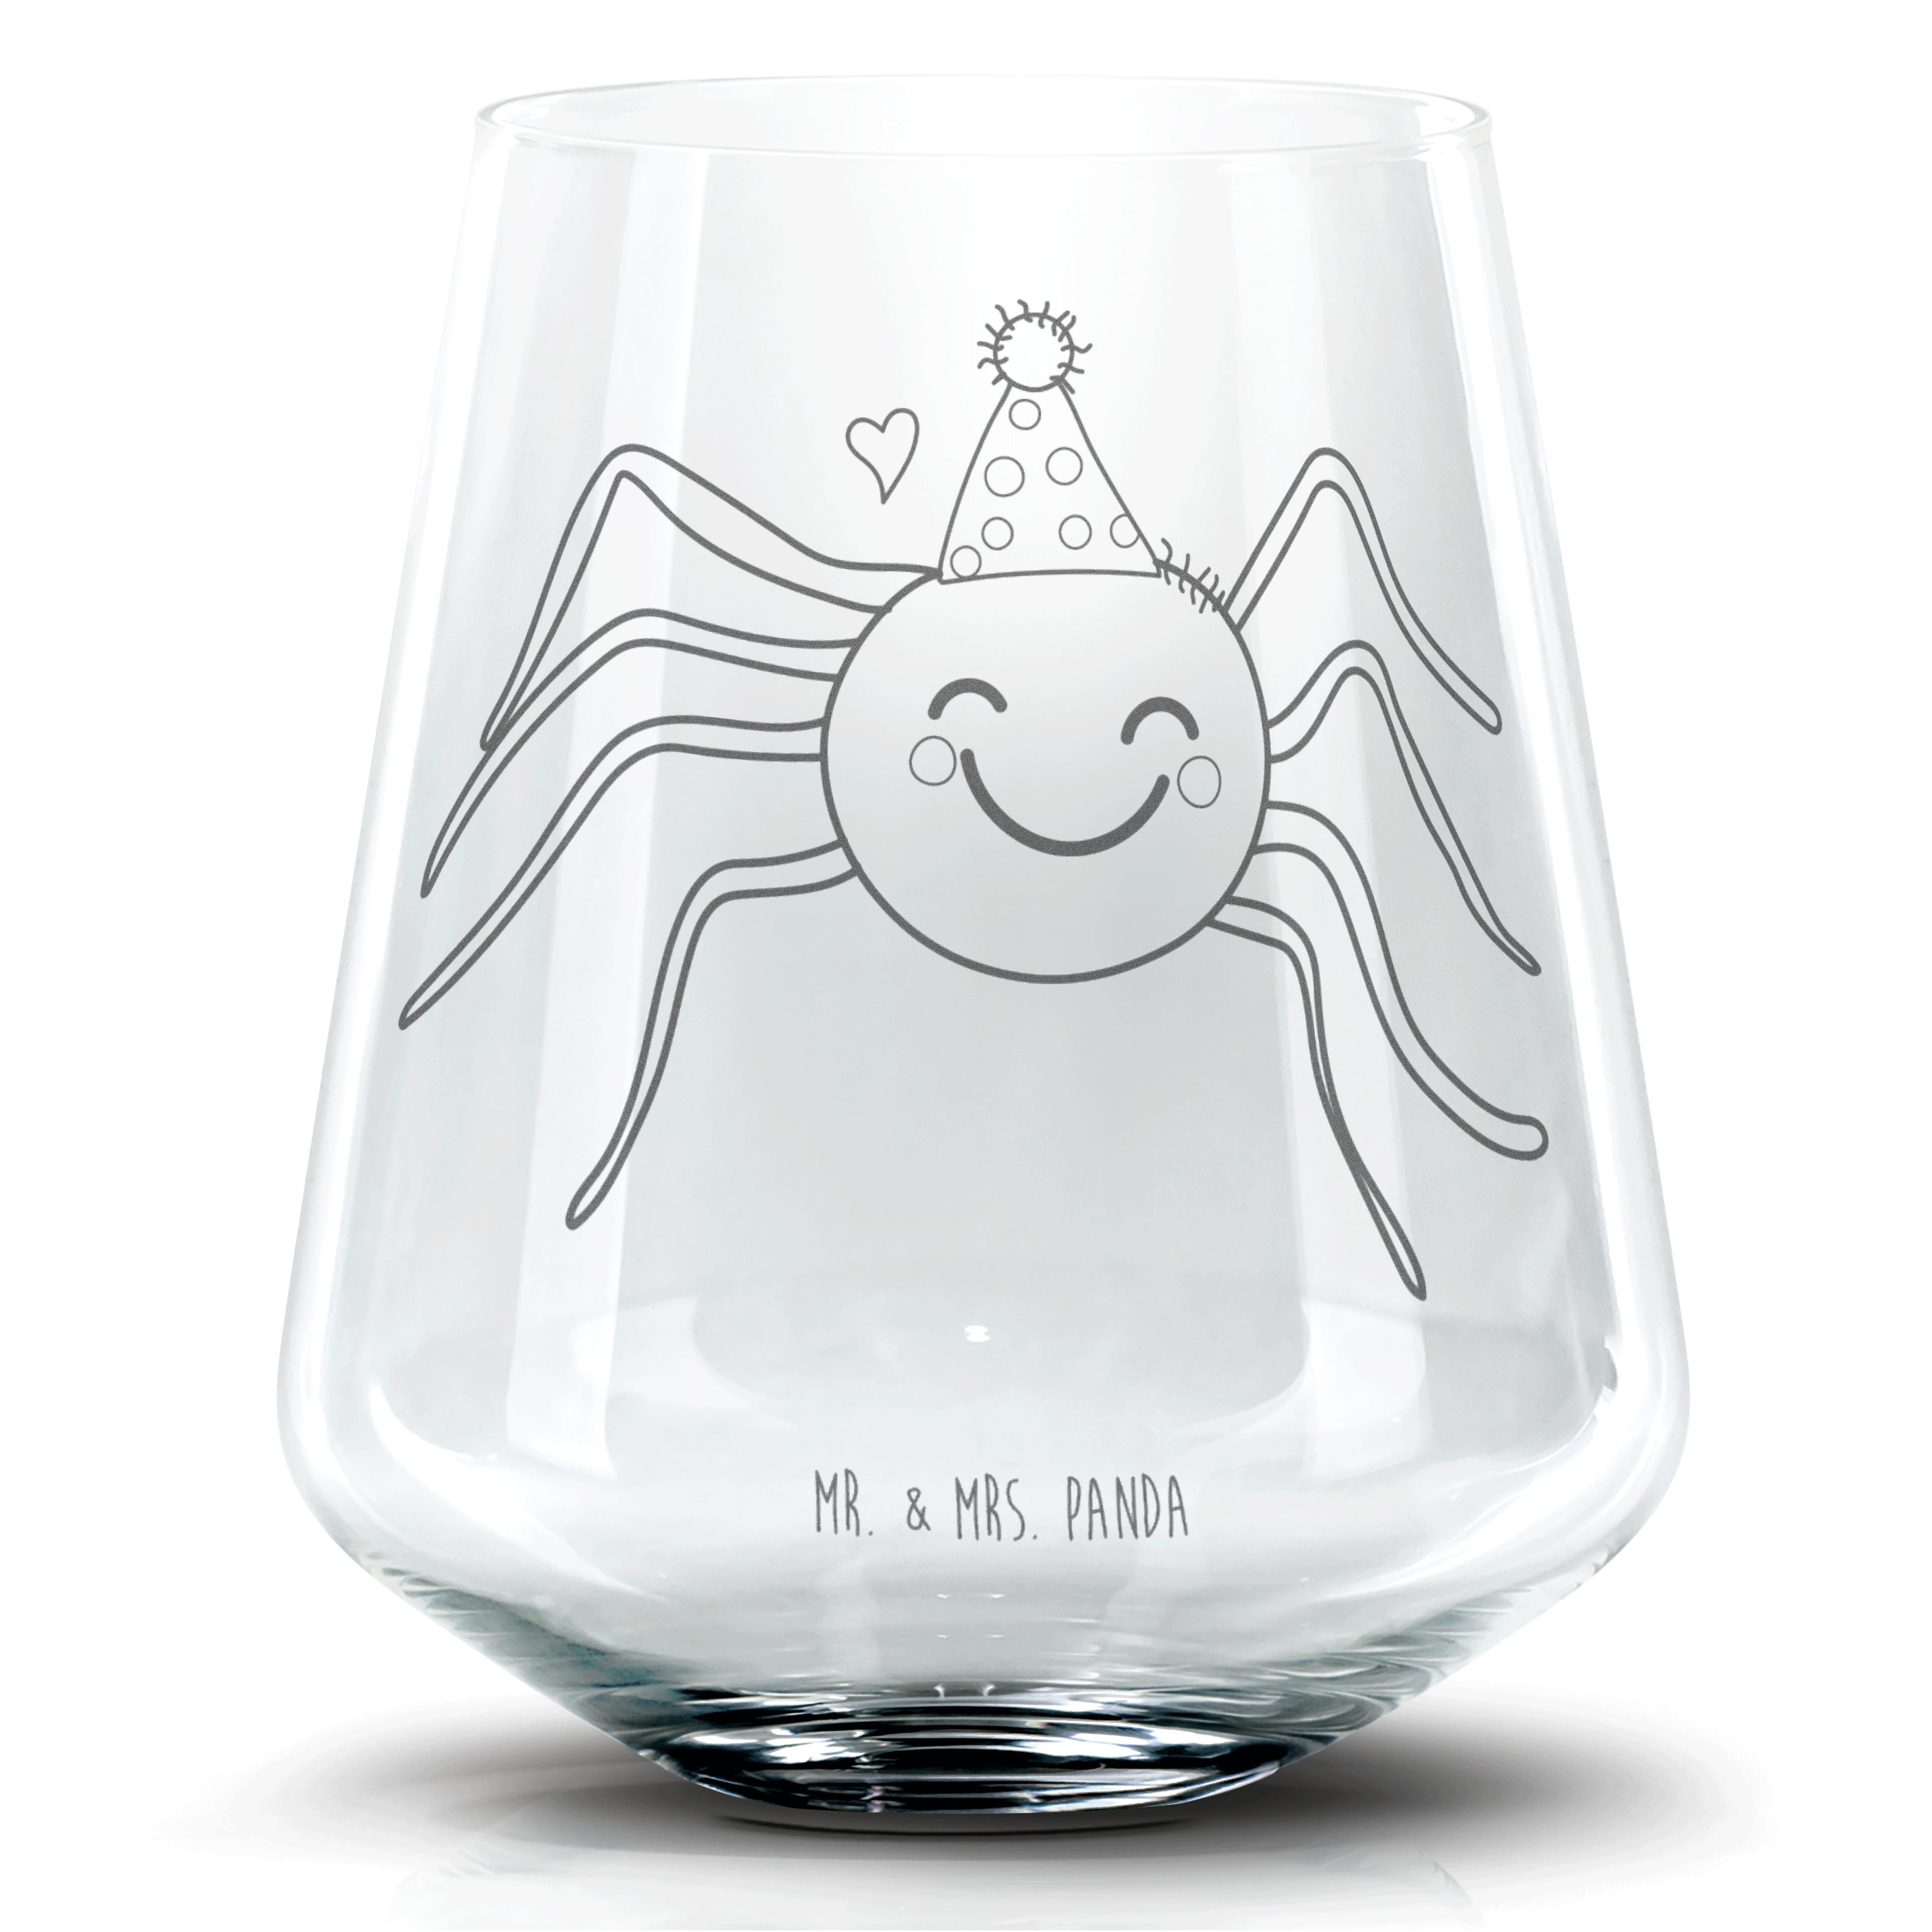 Mr. & Mrs. Panda Cocktailglas Spinne Agathe Party - Transparent - Geschenk, Cocktail Glas mit Wunsc, Premium Glas, Personalisierbar